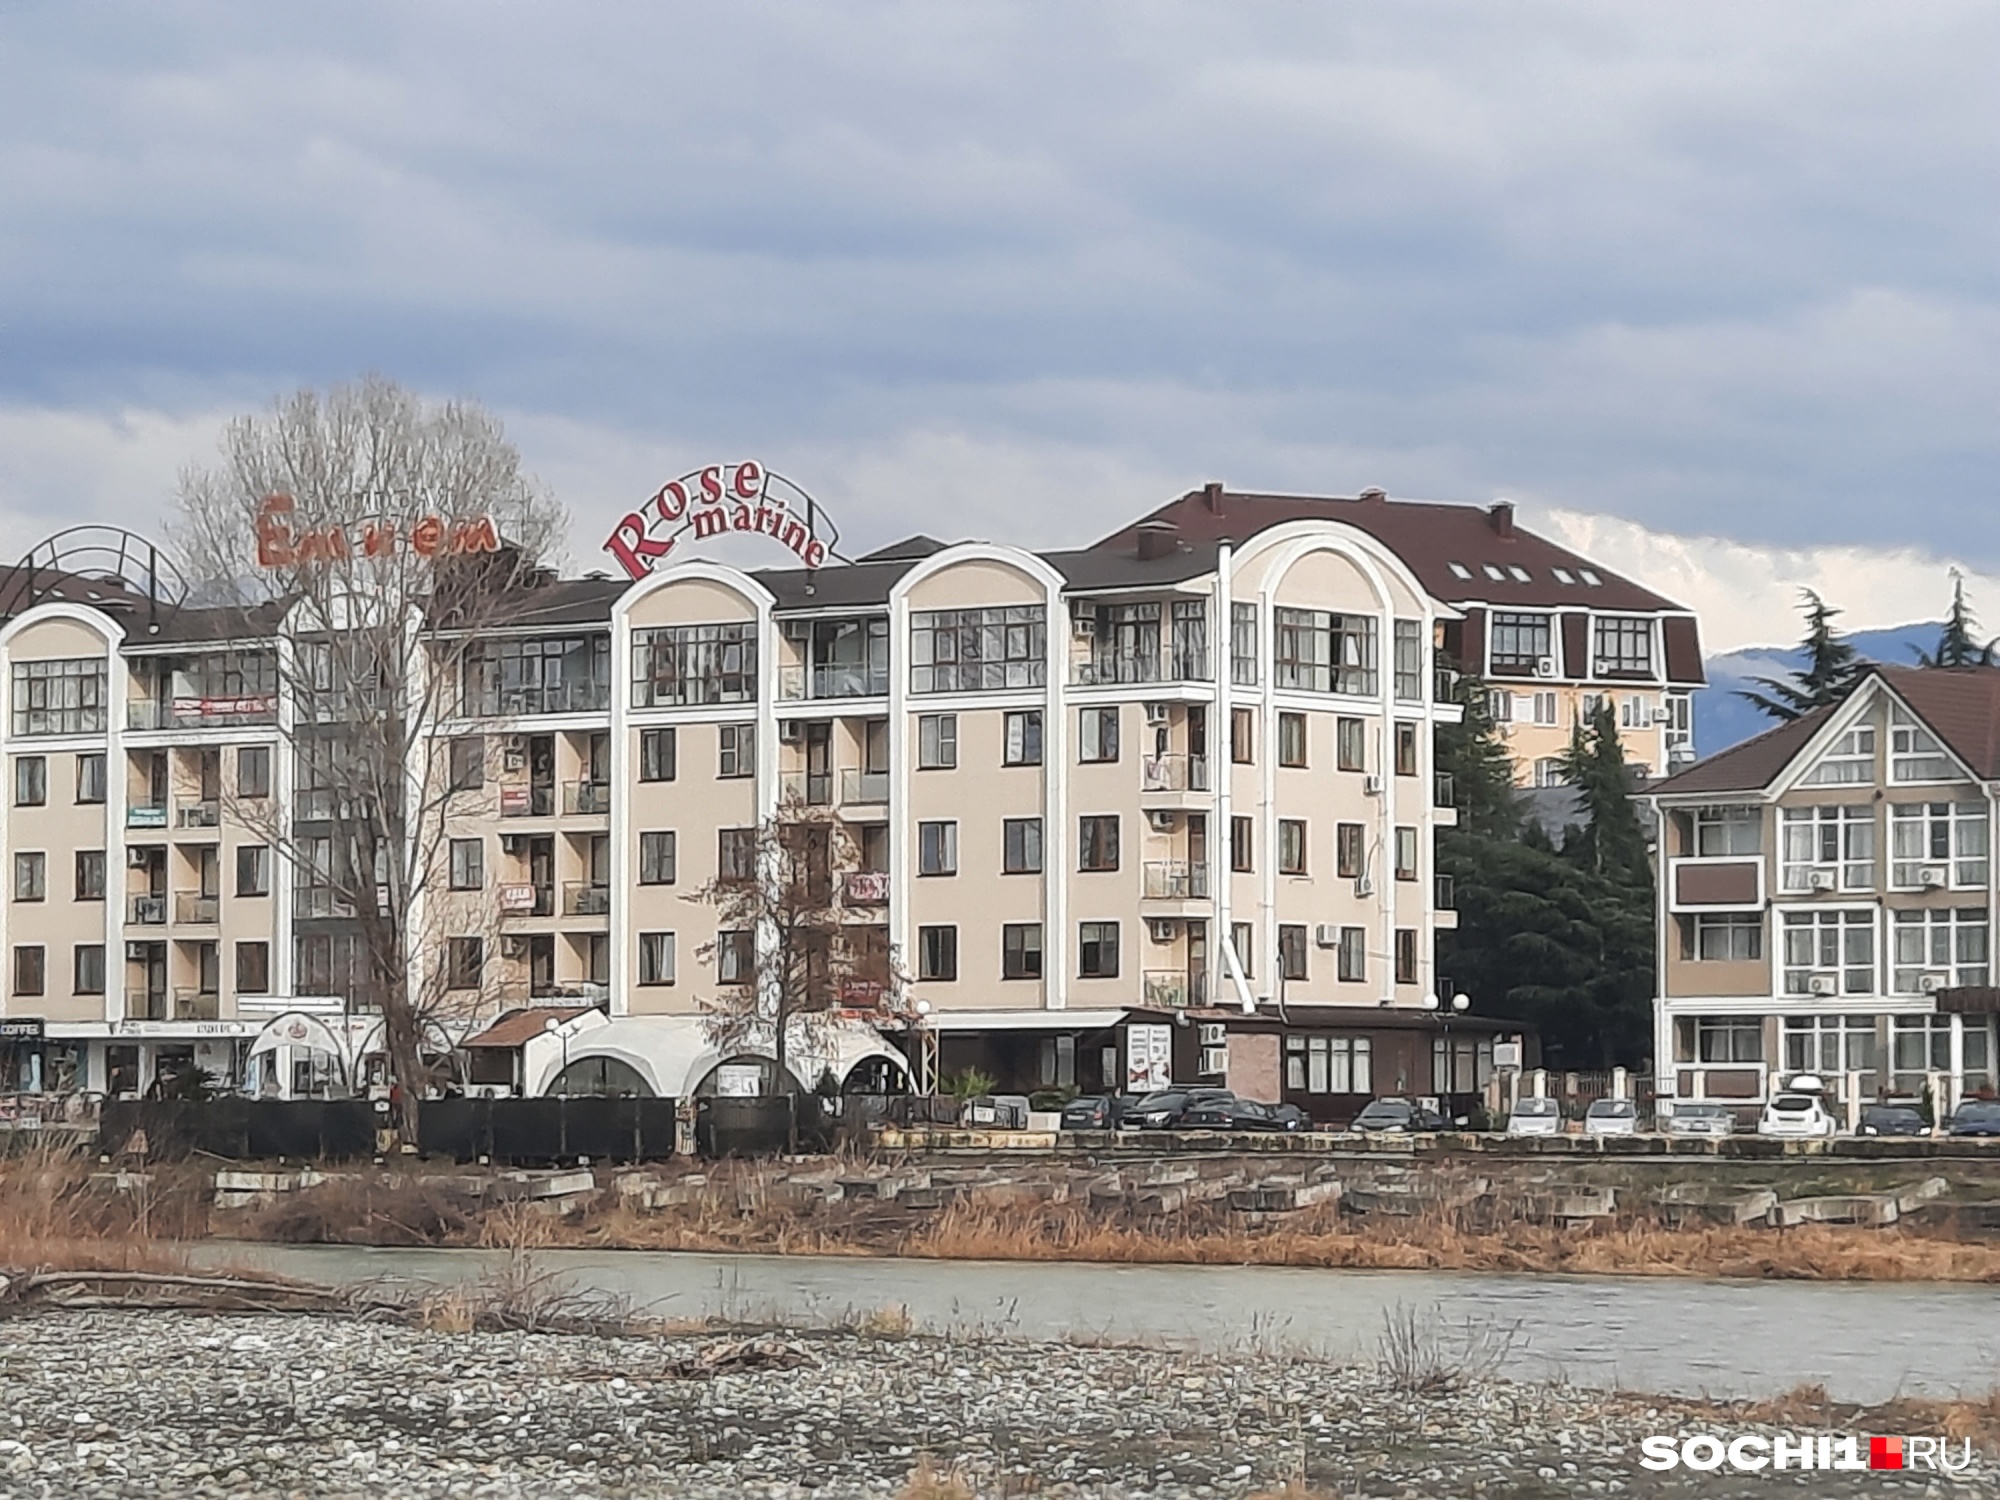 Необходимо первым делом отменить курортный сбор в Краснодарском крае, считают отельеры